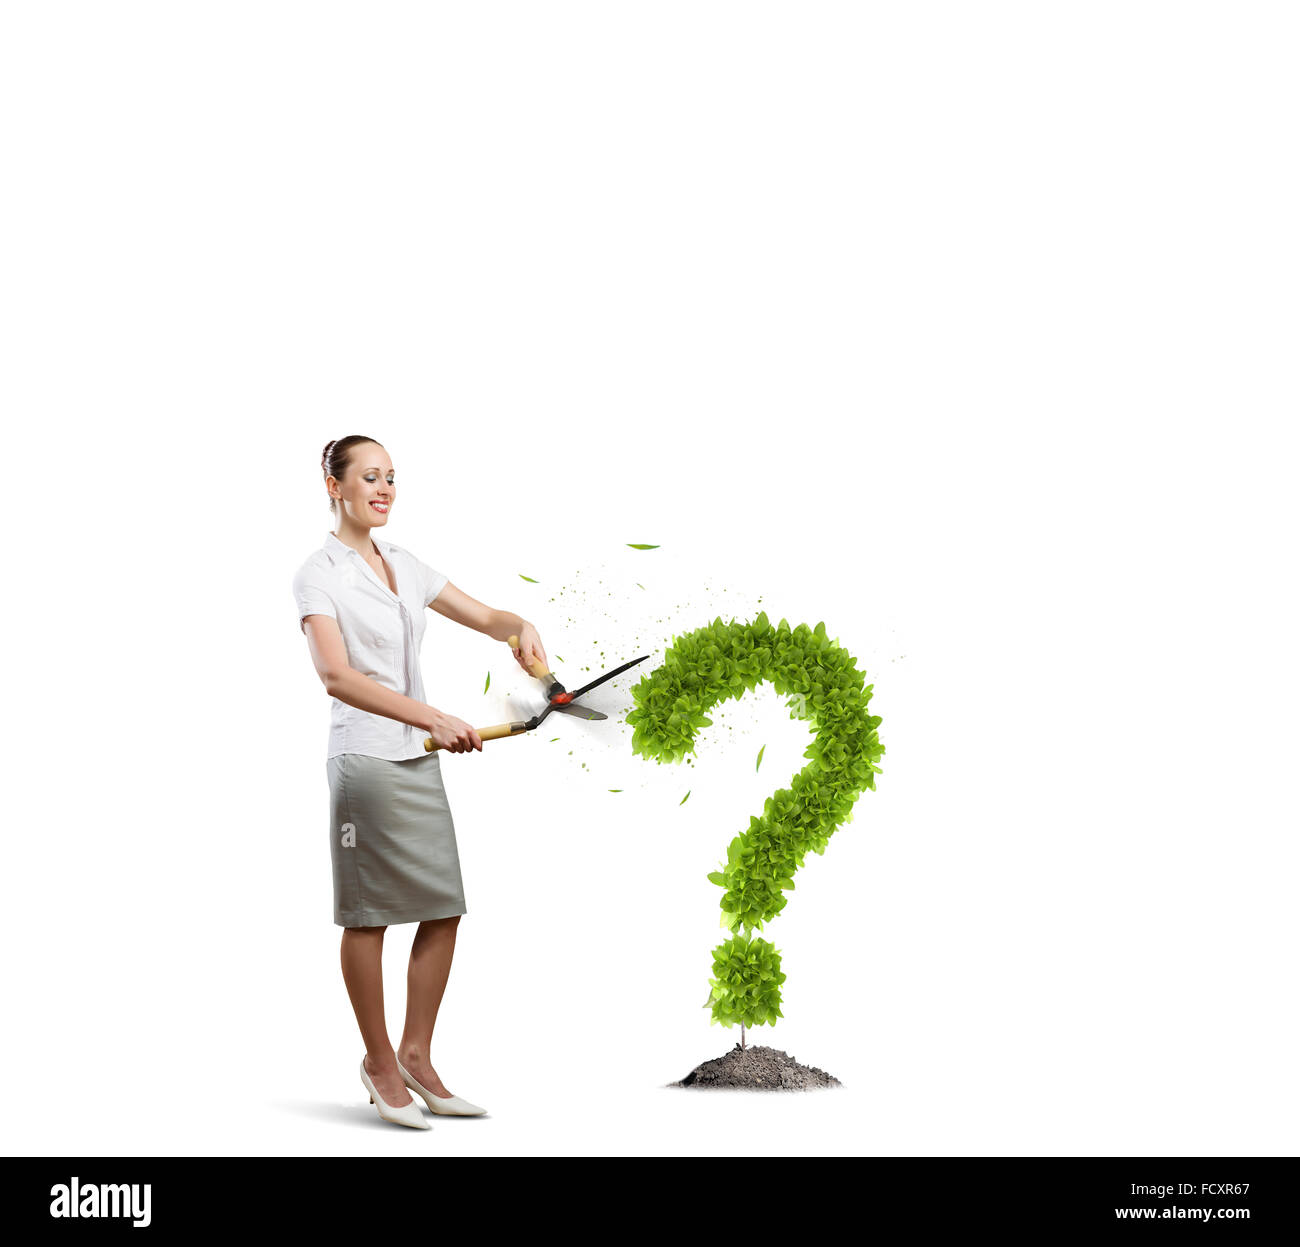 Image conceptuelle de plante verte en forme de point d'interrogation Banque D'Images